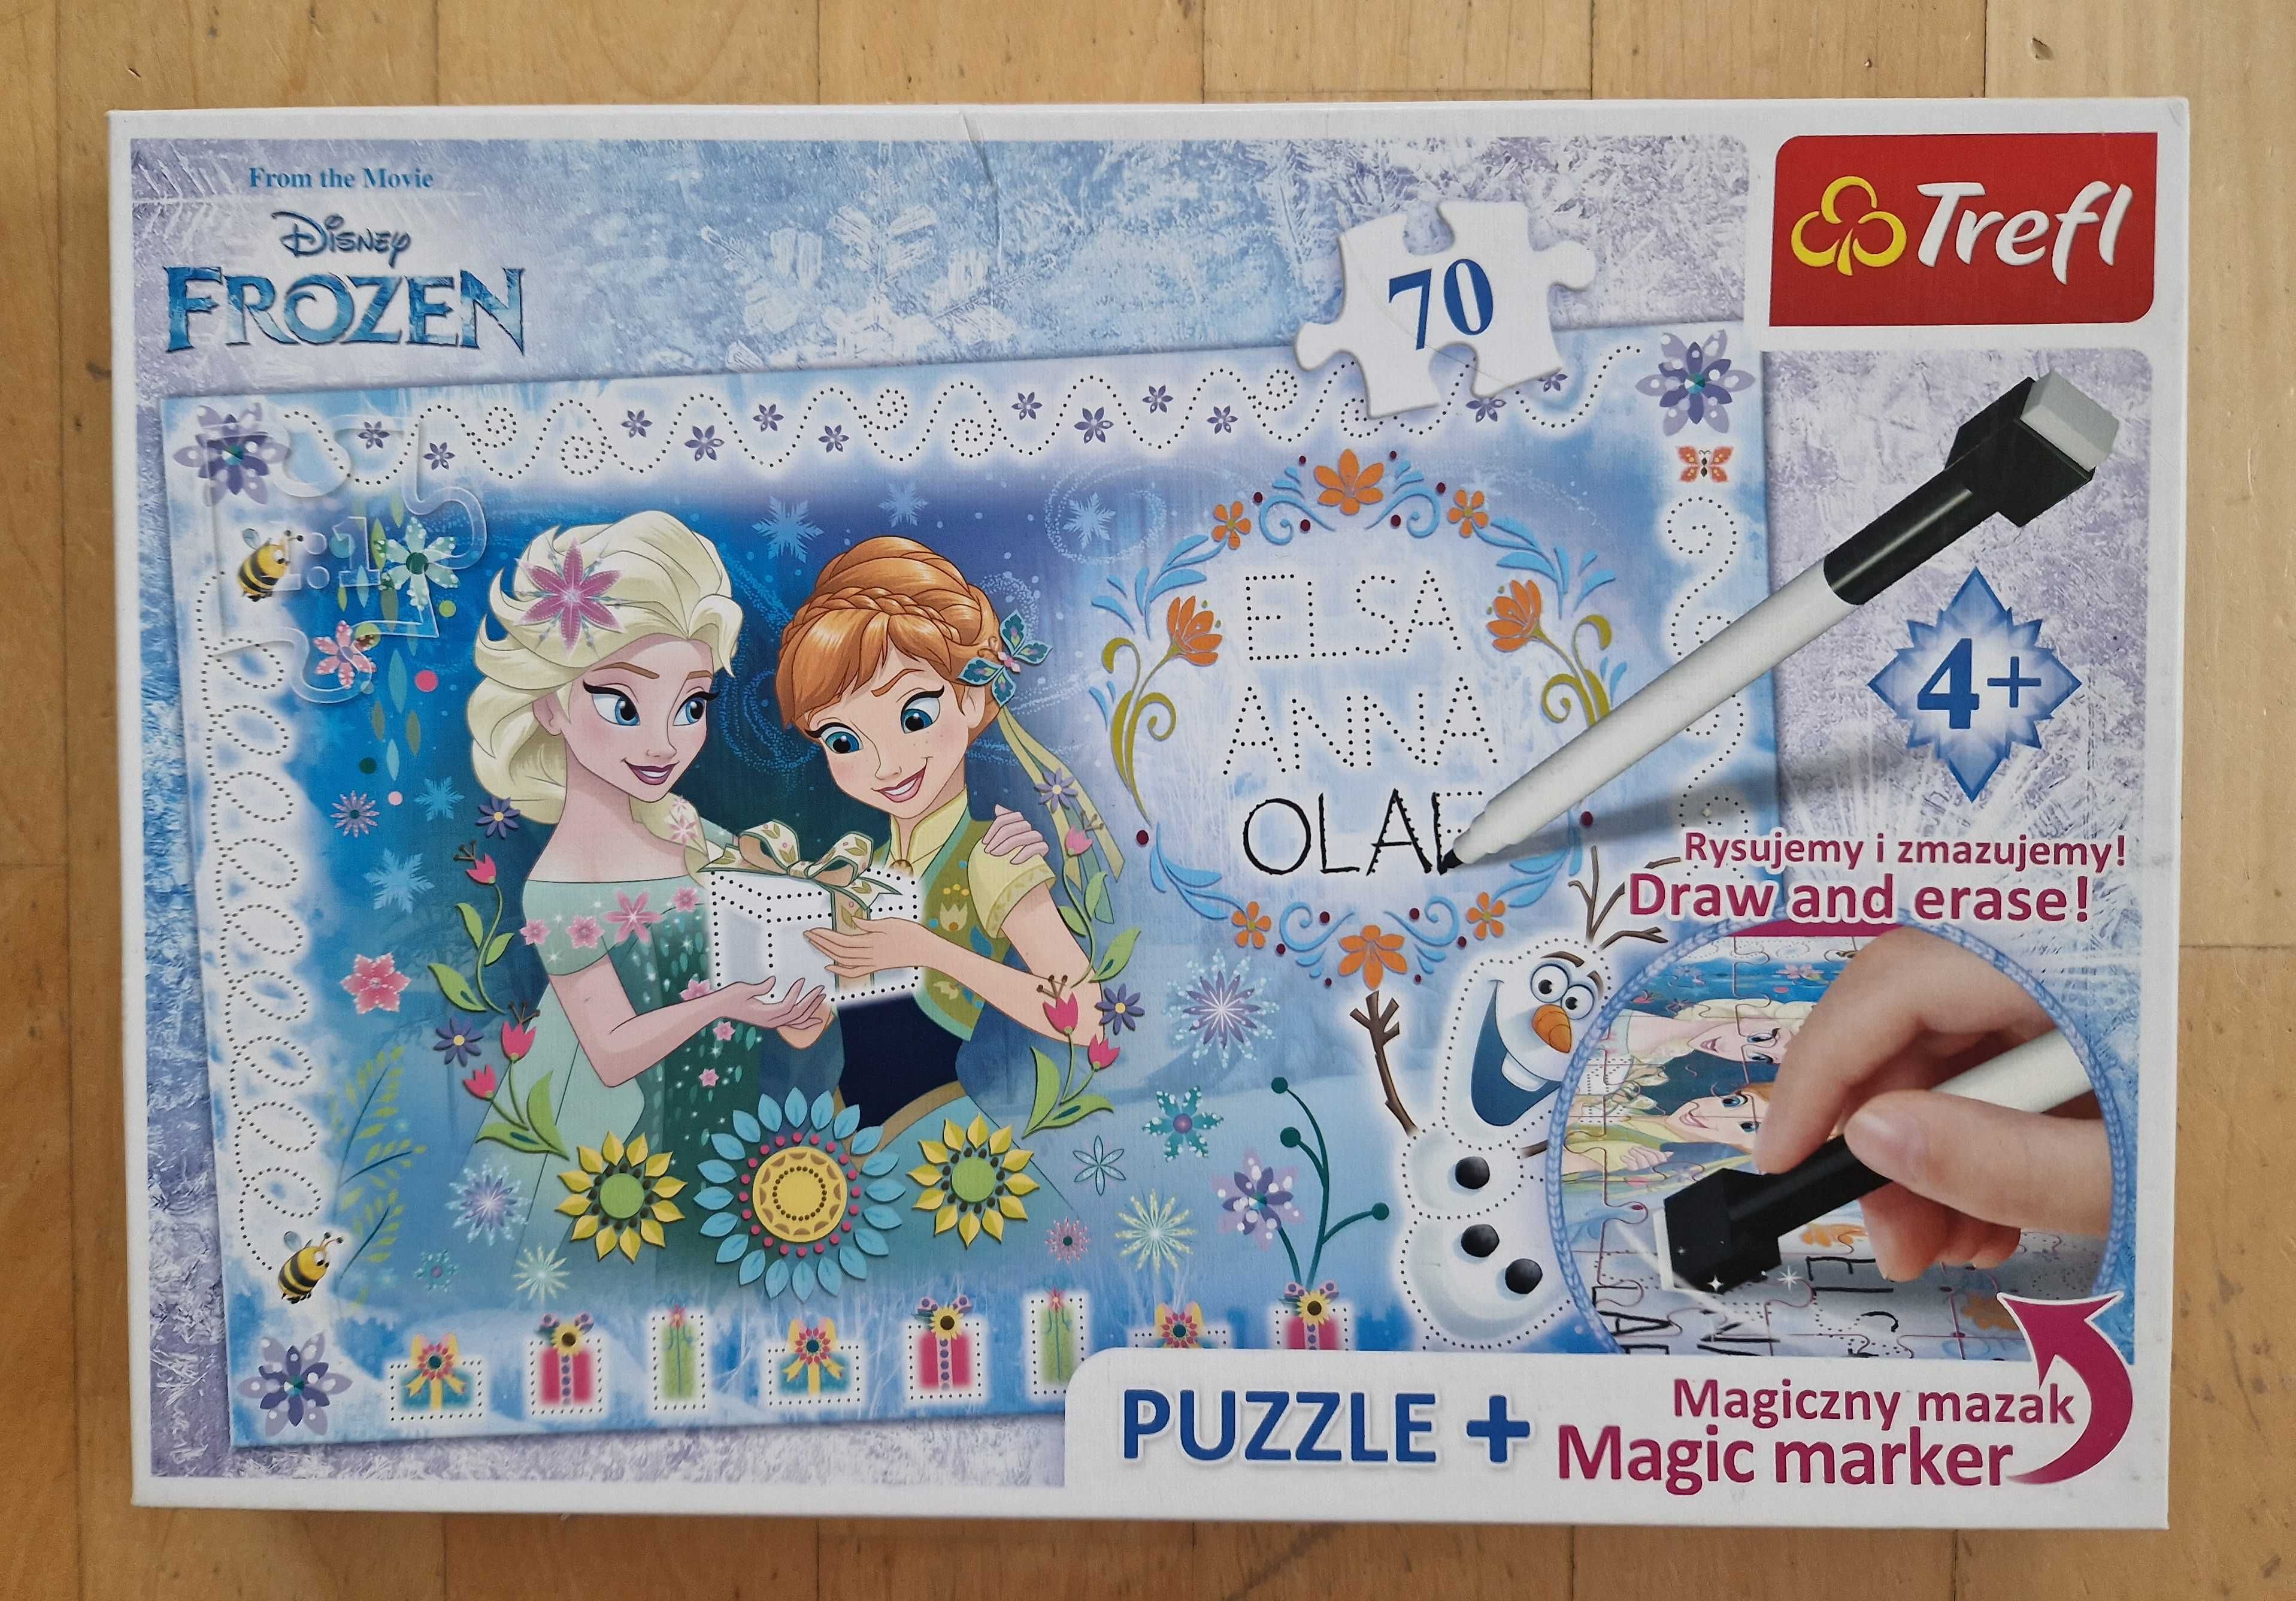 Puzzle Kraina Lodu (Elsa, Anna, Frozen) z mazakiem, 70 el., Trefl, 4+